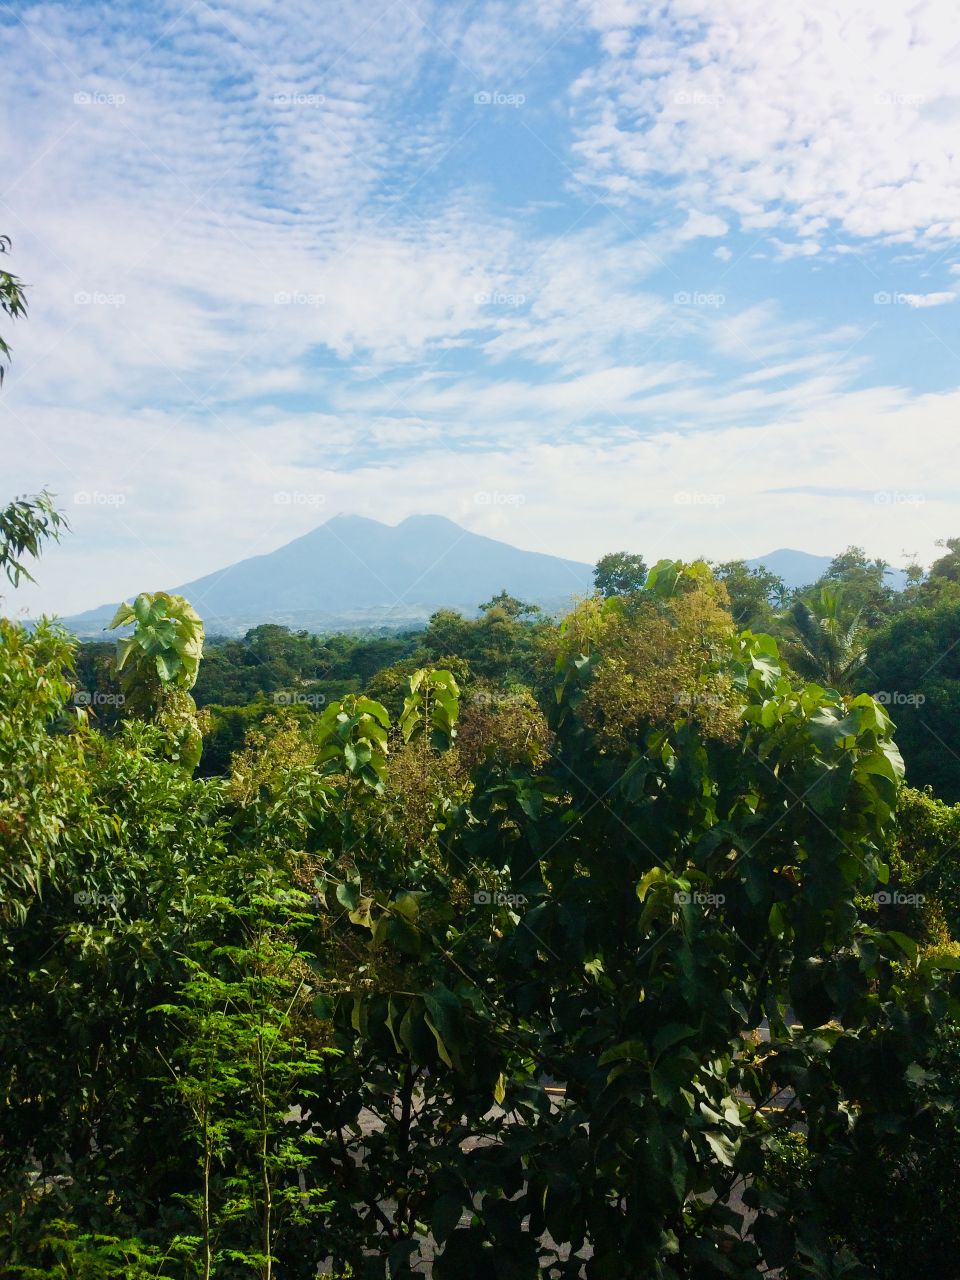 San Vicente volcano in El Salvador 🇸🇻 